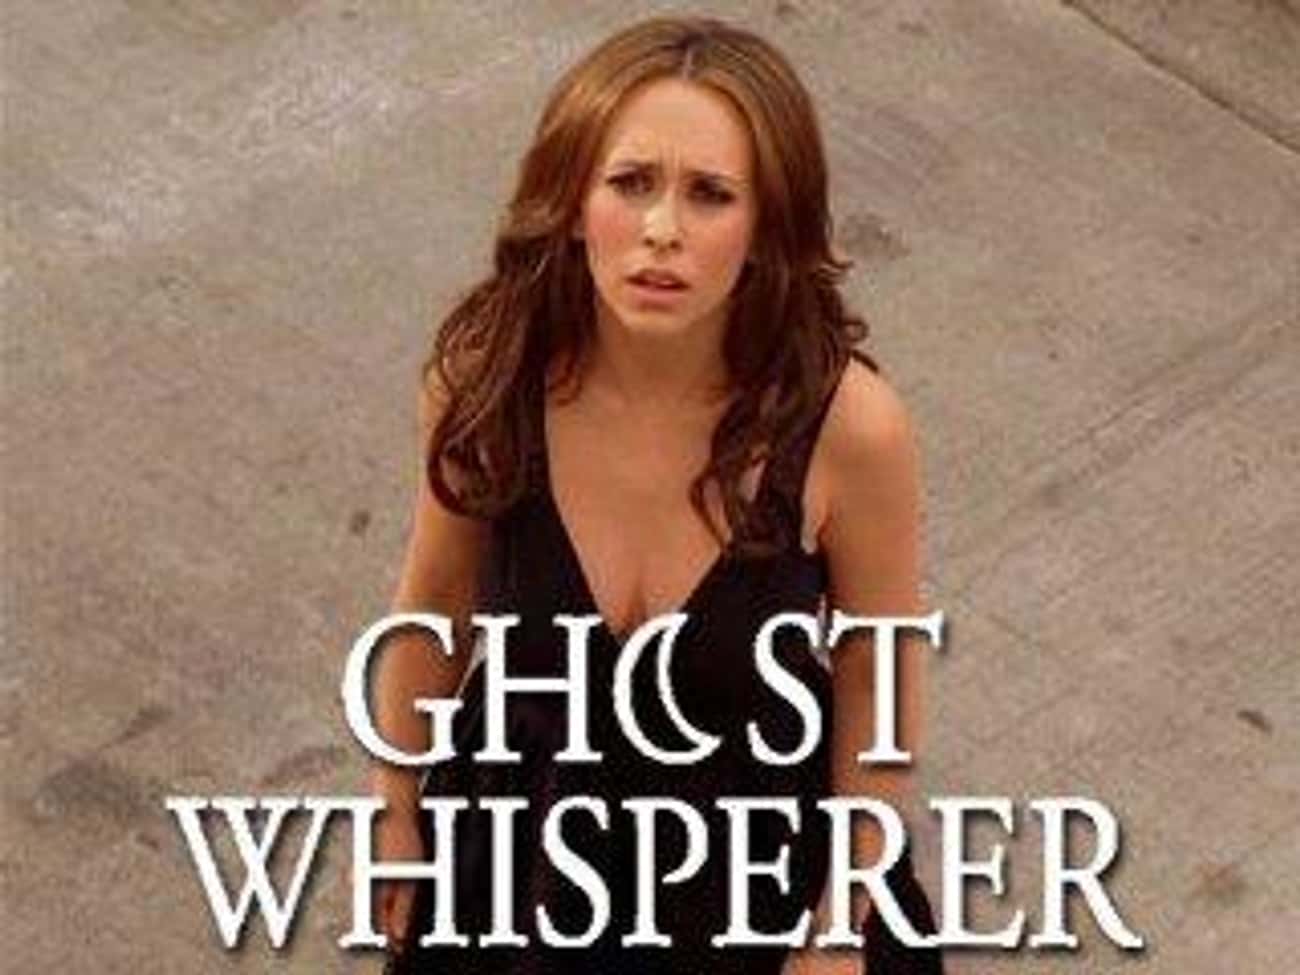 Ghost Whisperer Season 2